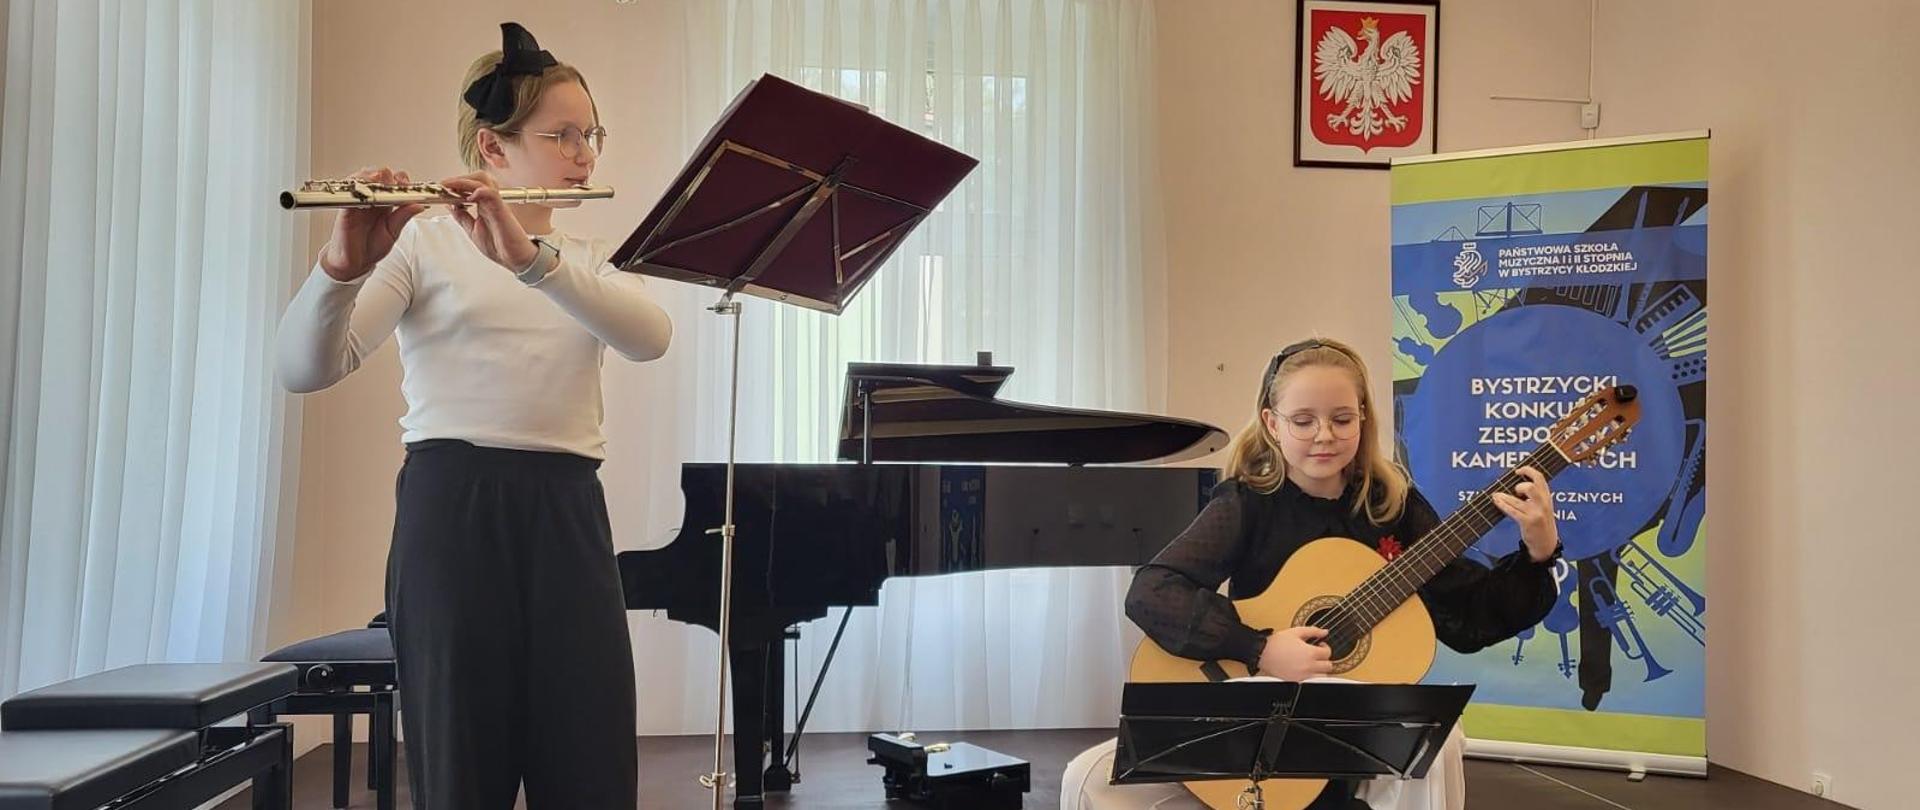 Od lewej uczennica gra na flecie, po prawej uczennica gra na gitarze na XXVII Bystrzyckim Konkursie Zespołów Kameralnych w Bystrzycy Kłodzkiej - 19 kwietnia 2024